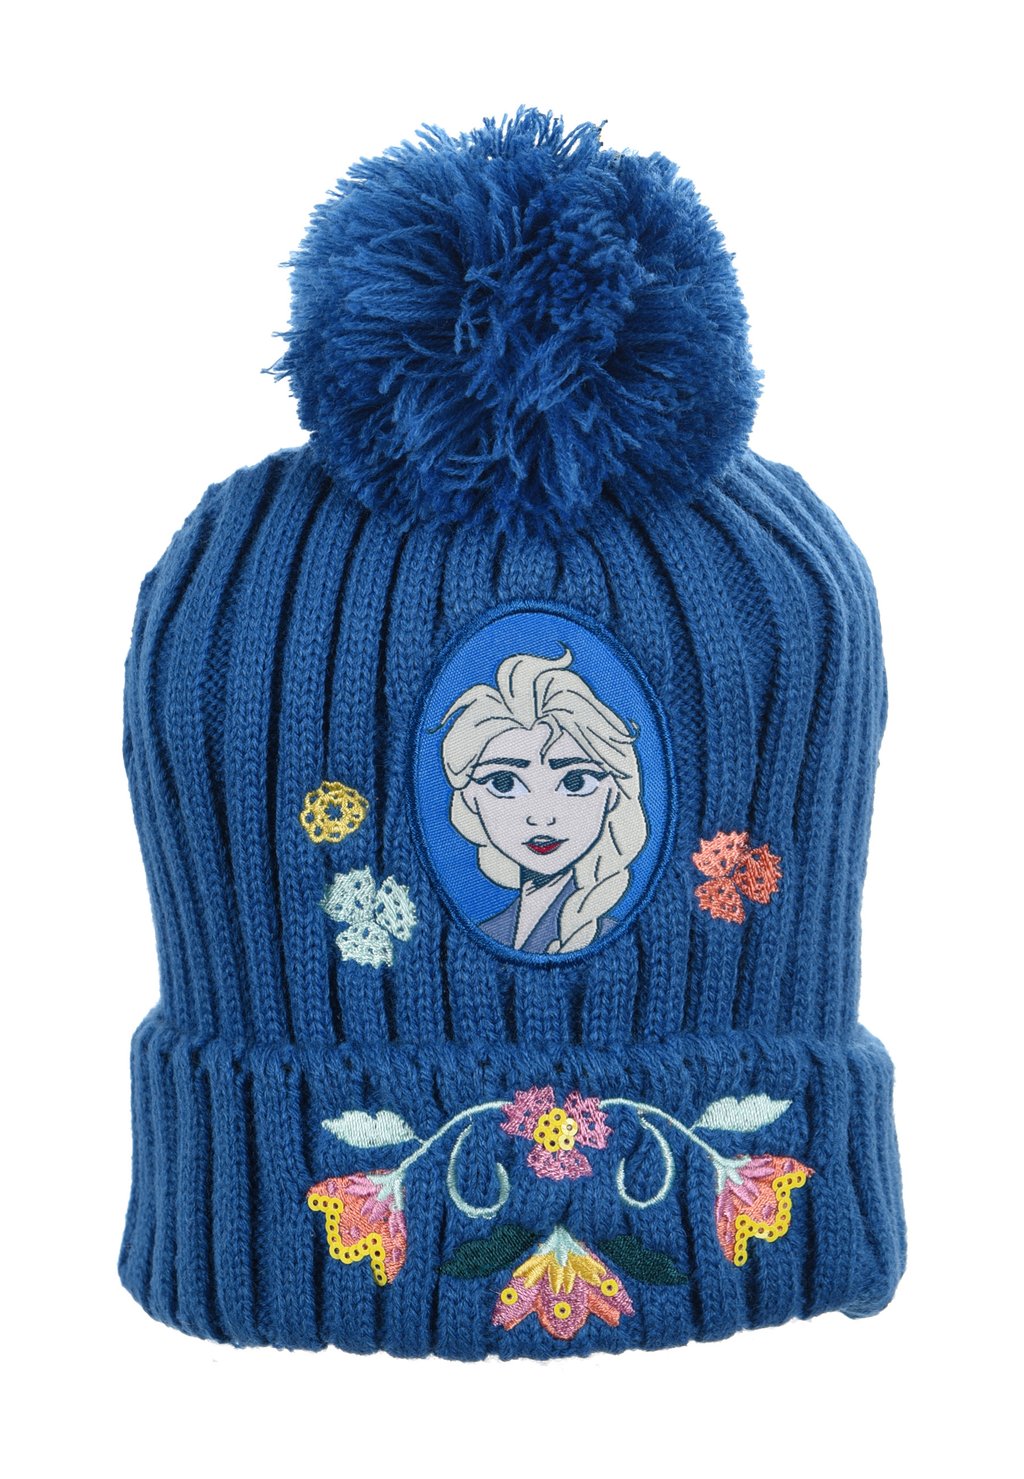 Шапка ELSA WINTER Disney FROZEN, цвет blau шапка winter set tlg disney frozen цвет blau